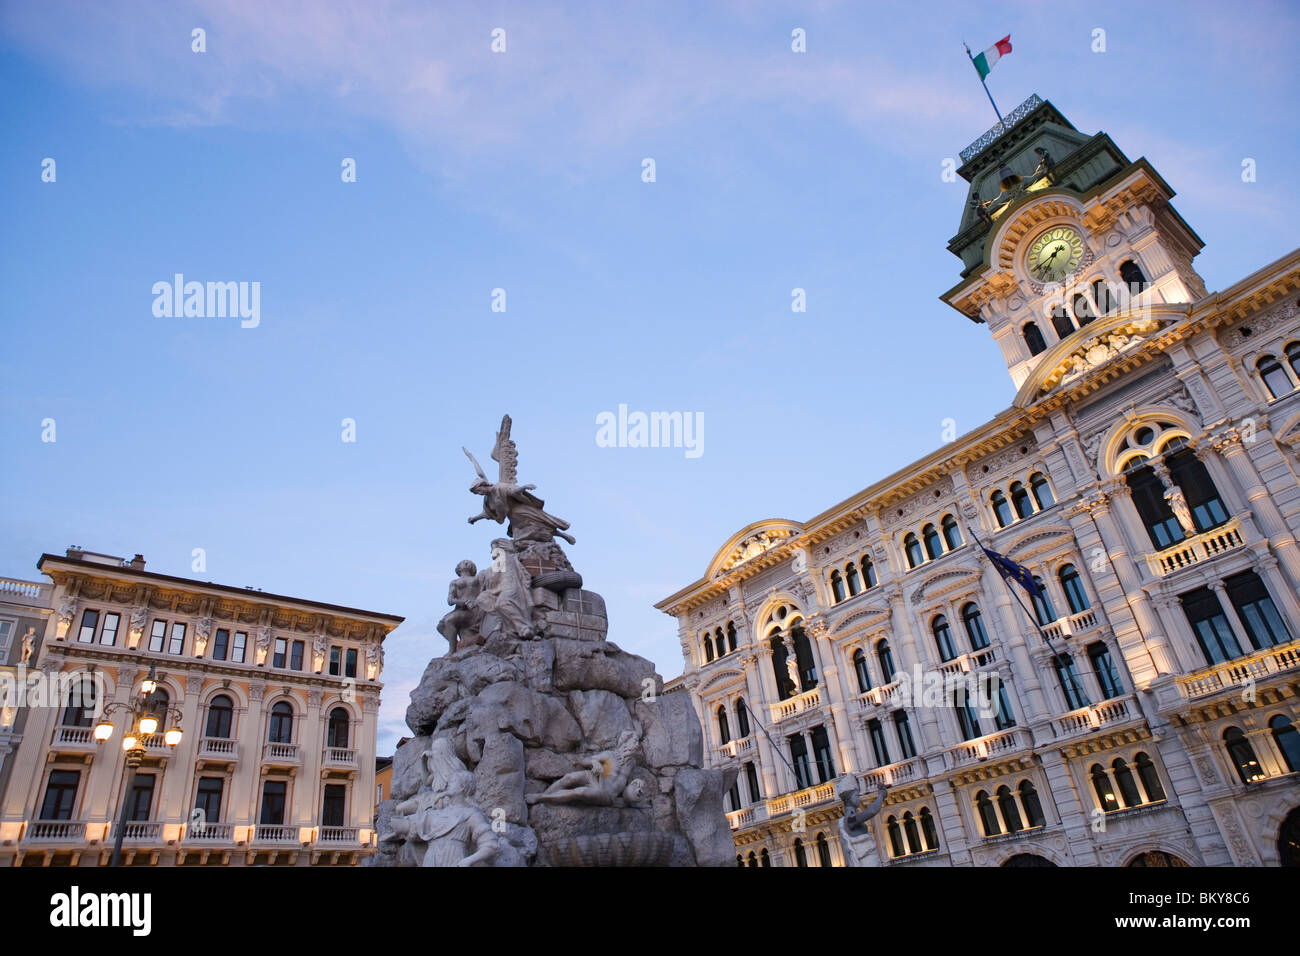 City hall on the Piazza dell'Unita d'Italia, Trieste, Friuli-Venezia Giulia, Upper Italy, Italy Stock Photo